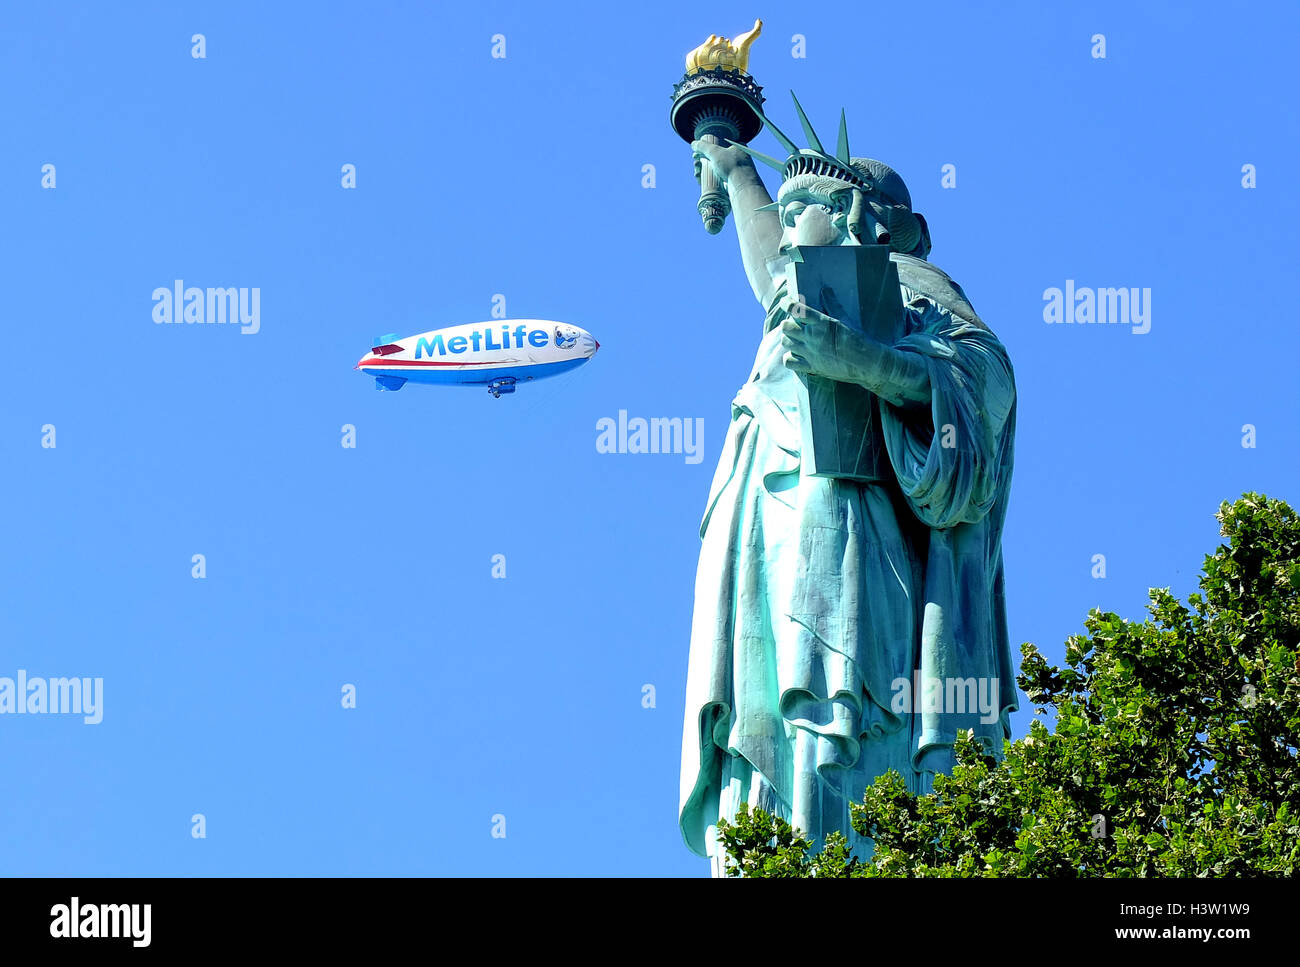 Metlife blimp presso la statua della libertà new york stati uniti d'America, il dirigibile vola in passato. Foto Stock